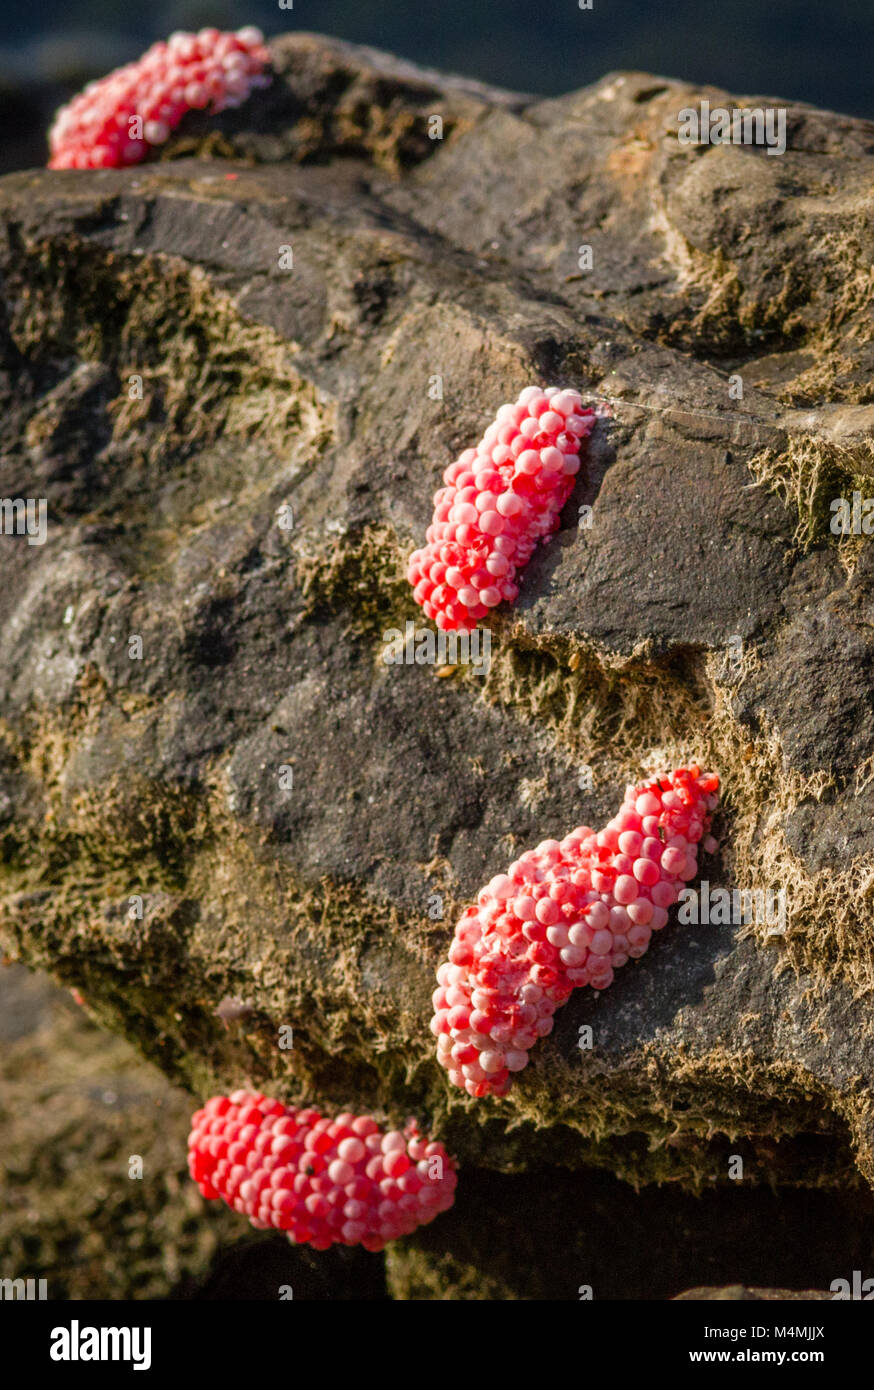 Les œufs de couleur rose vif de l'escargot Pomacea canaliculata apple aquatiques fixées sur des rochers au-dessus de l'eau contiennent neurotoxine puissante pour dissuader les prédateurs - Bornéo Banque D'Images